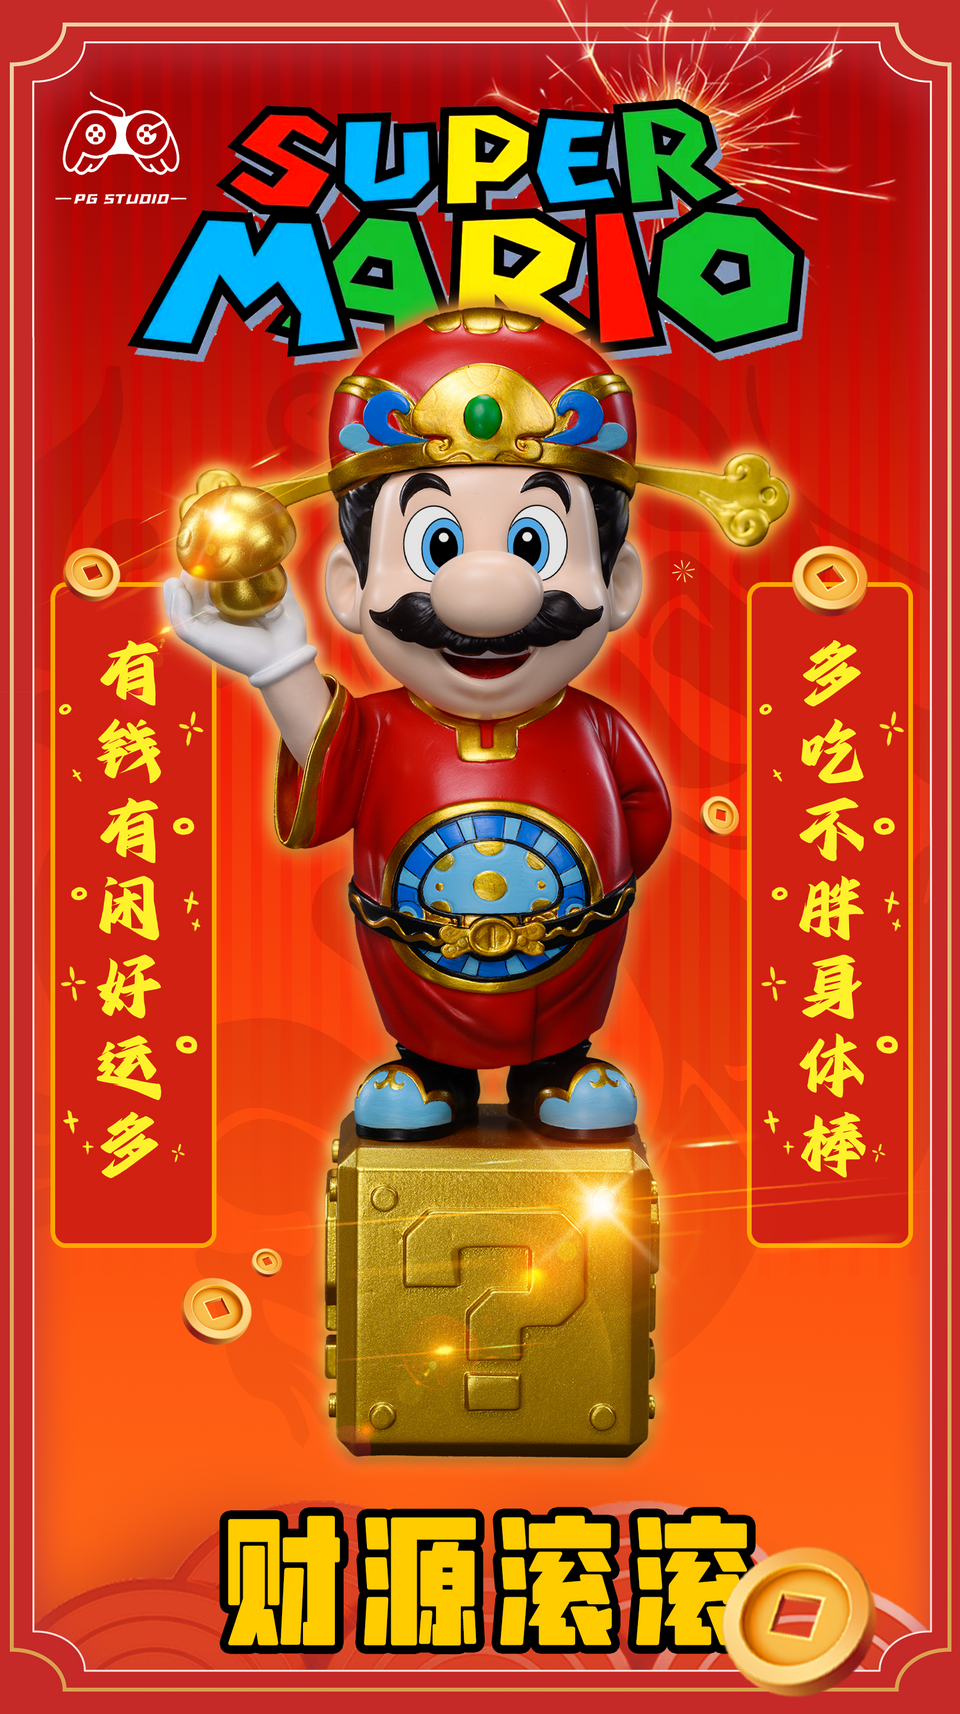 PG - Super Mario